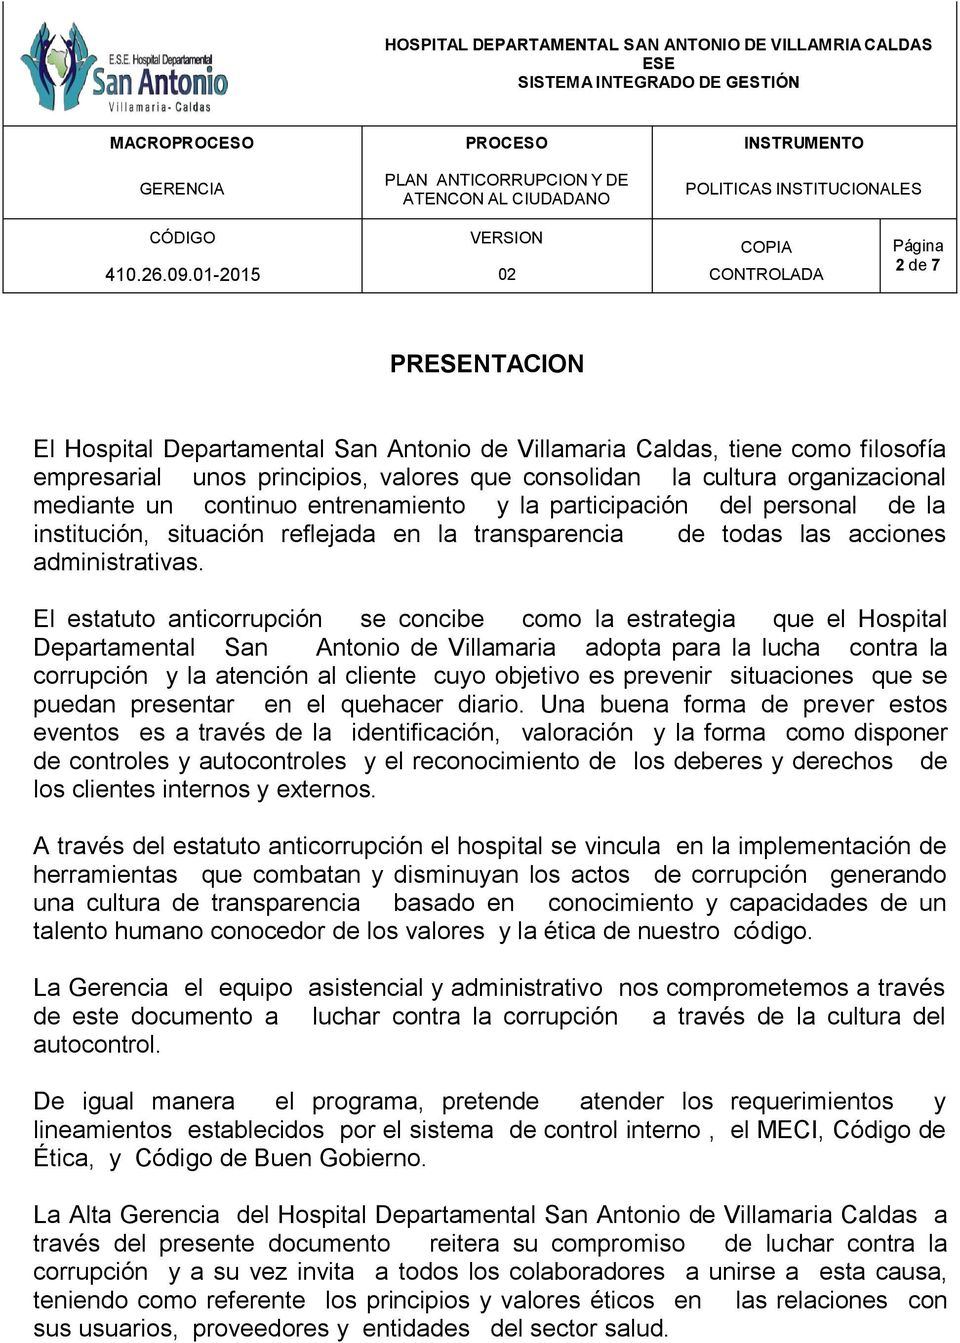 El estatuto anticorrupción se concibe como la estrategia que el Hospital Departamental San Antonio de Villamaria adopta para la lucha contra la corrupción y la atención al cliente cuyo objetivo es